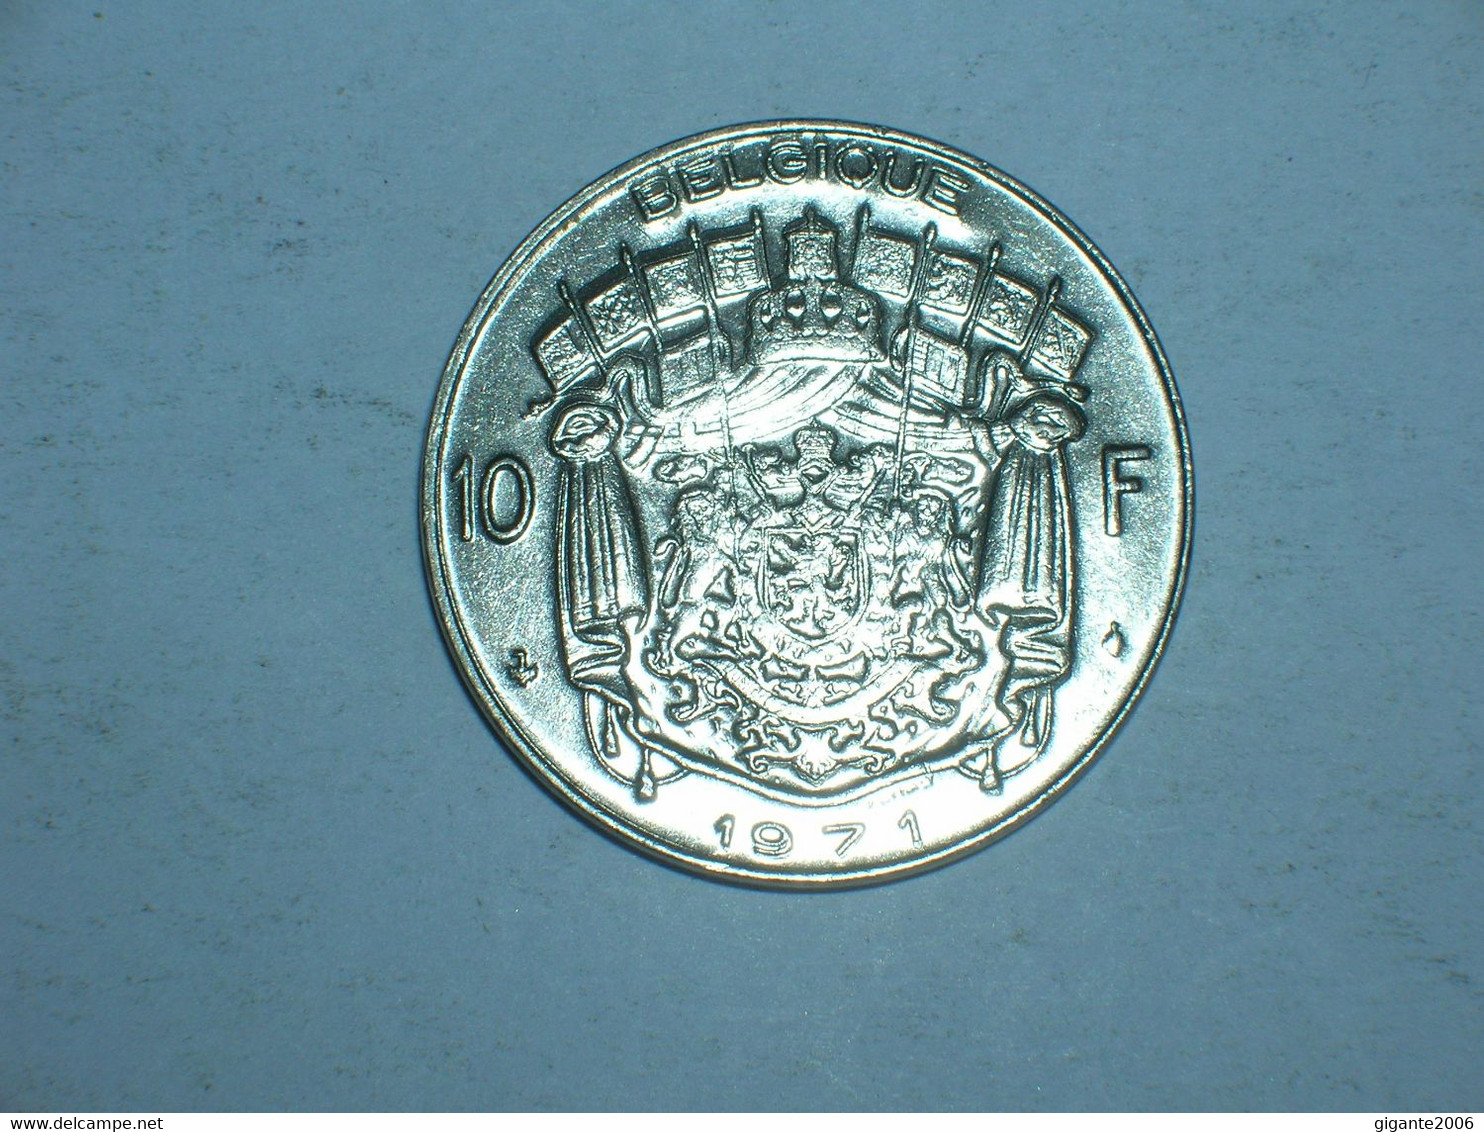 BELGICA 10 FRANCOS 1971 FR  (9258) - 10 Francs